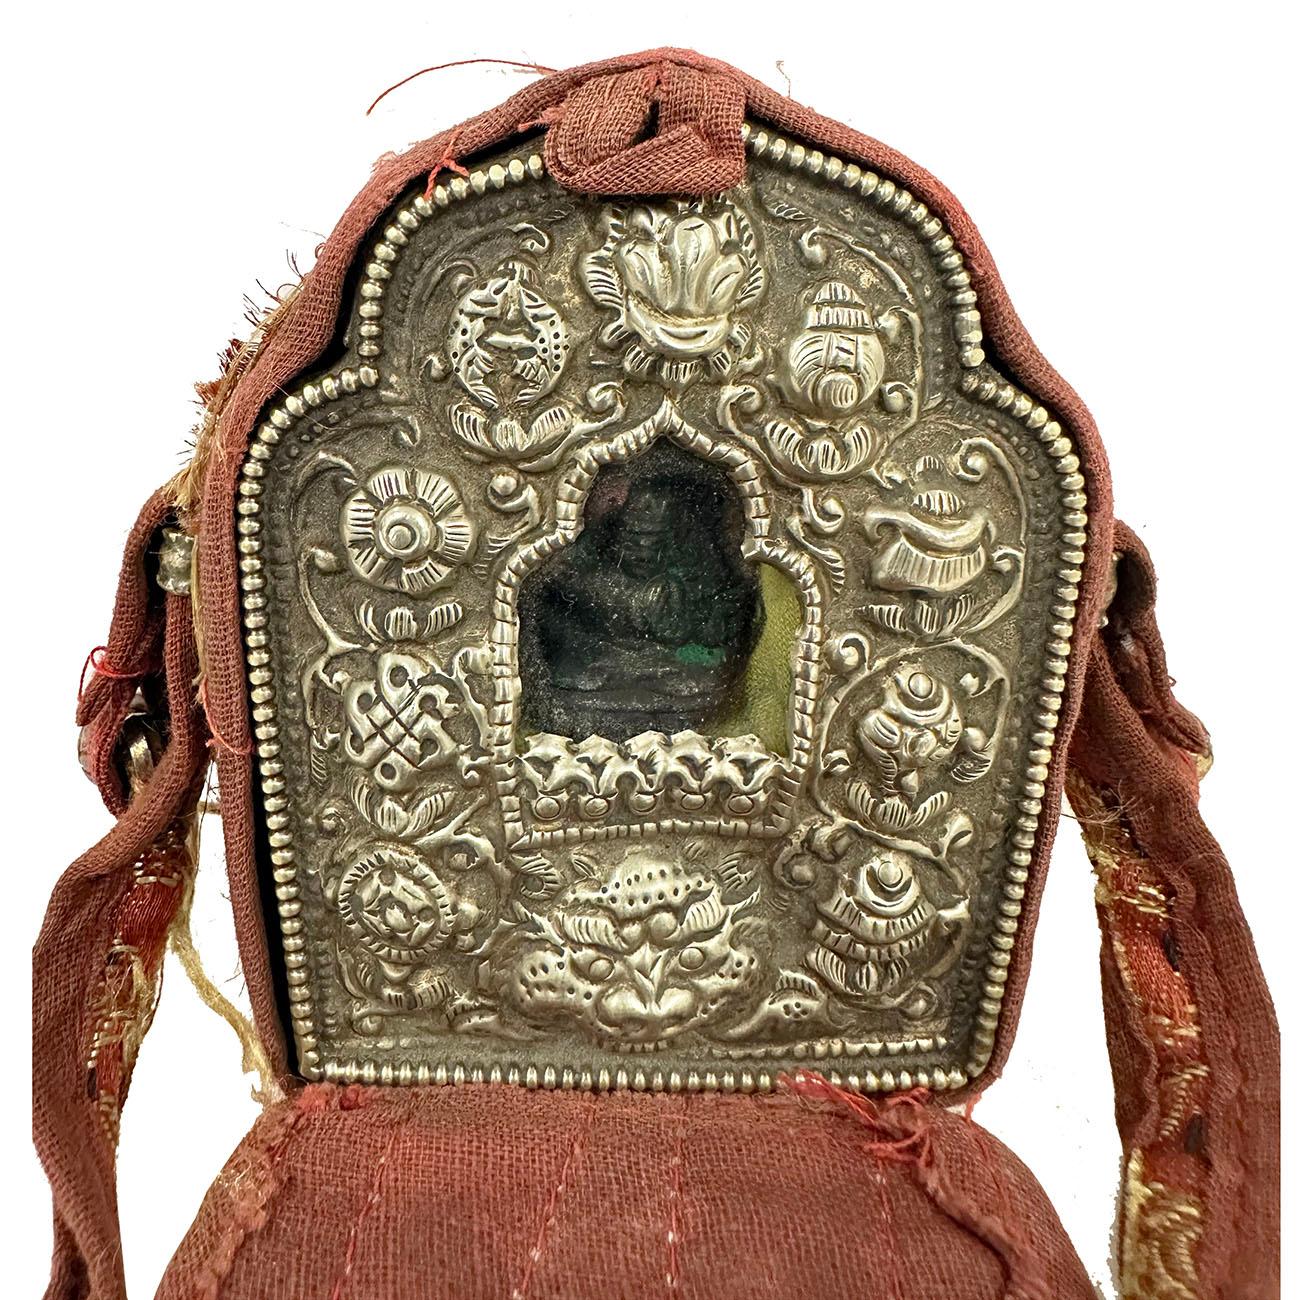 Ghau ist ein kleines Gebetskästchen, das von Buddhisten als Anhänger getragen wird und als tragbarer Schrein dient, den sie auf ihren Reisen zum Gebet nutzen können. Diese Ghau-Gebetsbox (Reise-Buddha-Schrein) aus tibetischem Silber mit einem Buddha